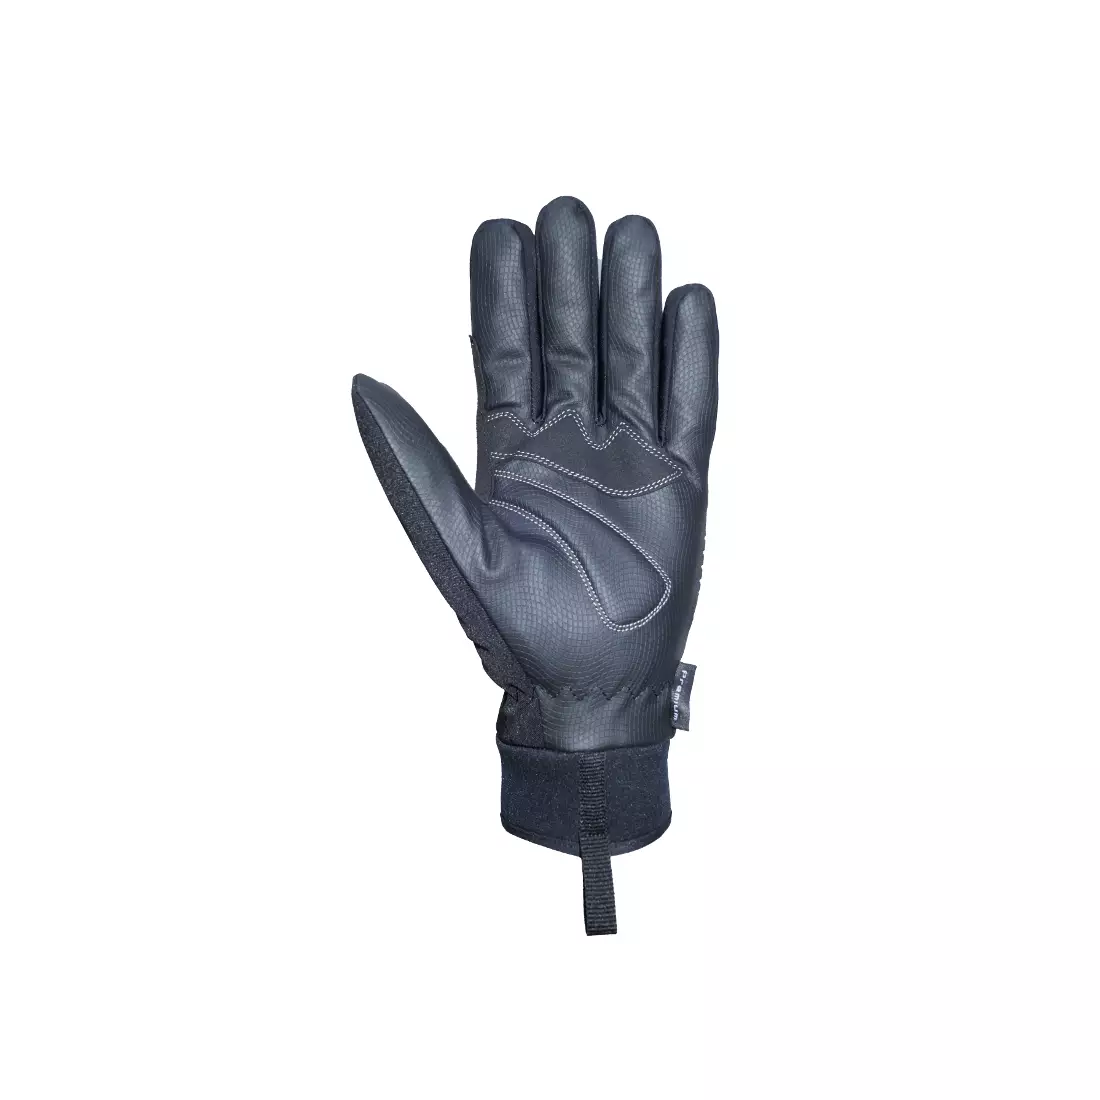 Mănuși de iarnă pentru ciclism CHIBA RAIN TOUCH, negre 3120018